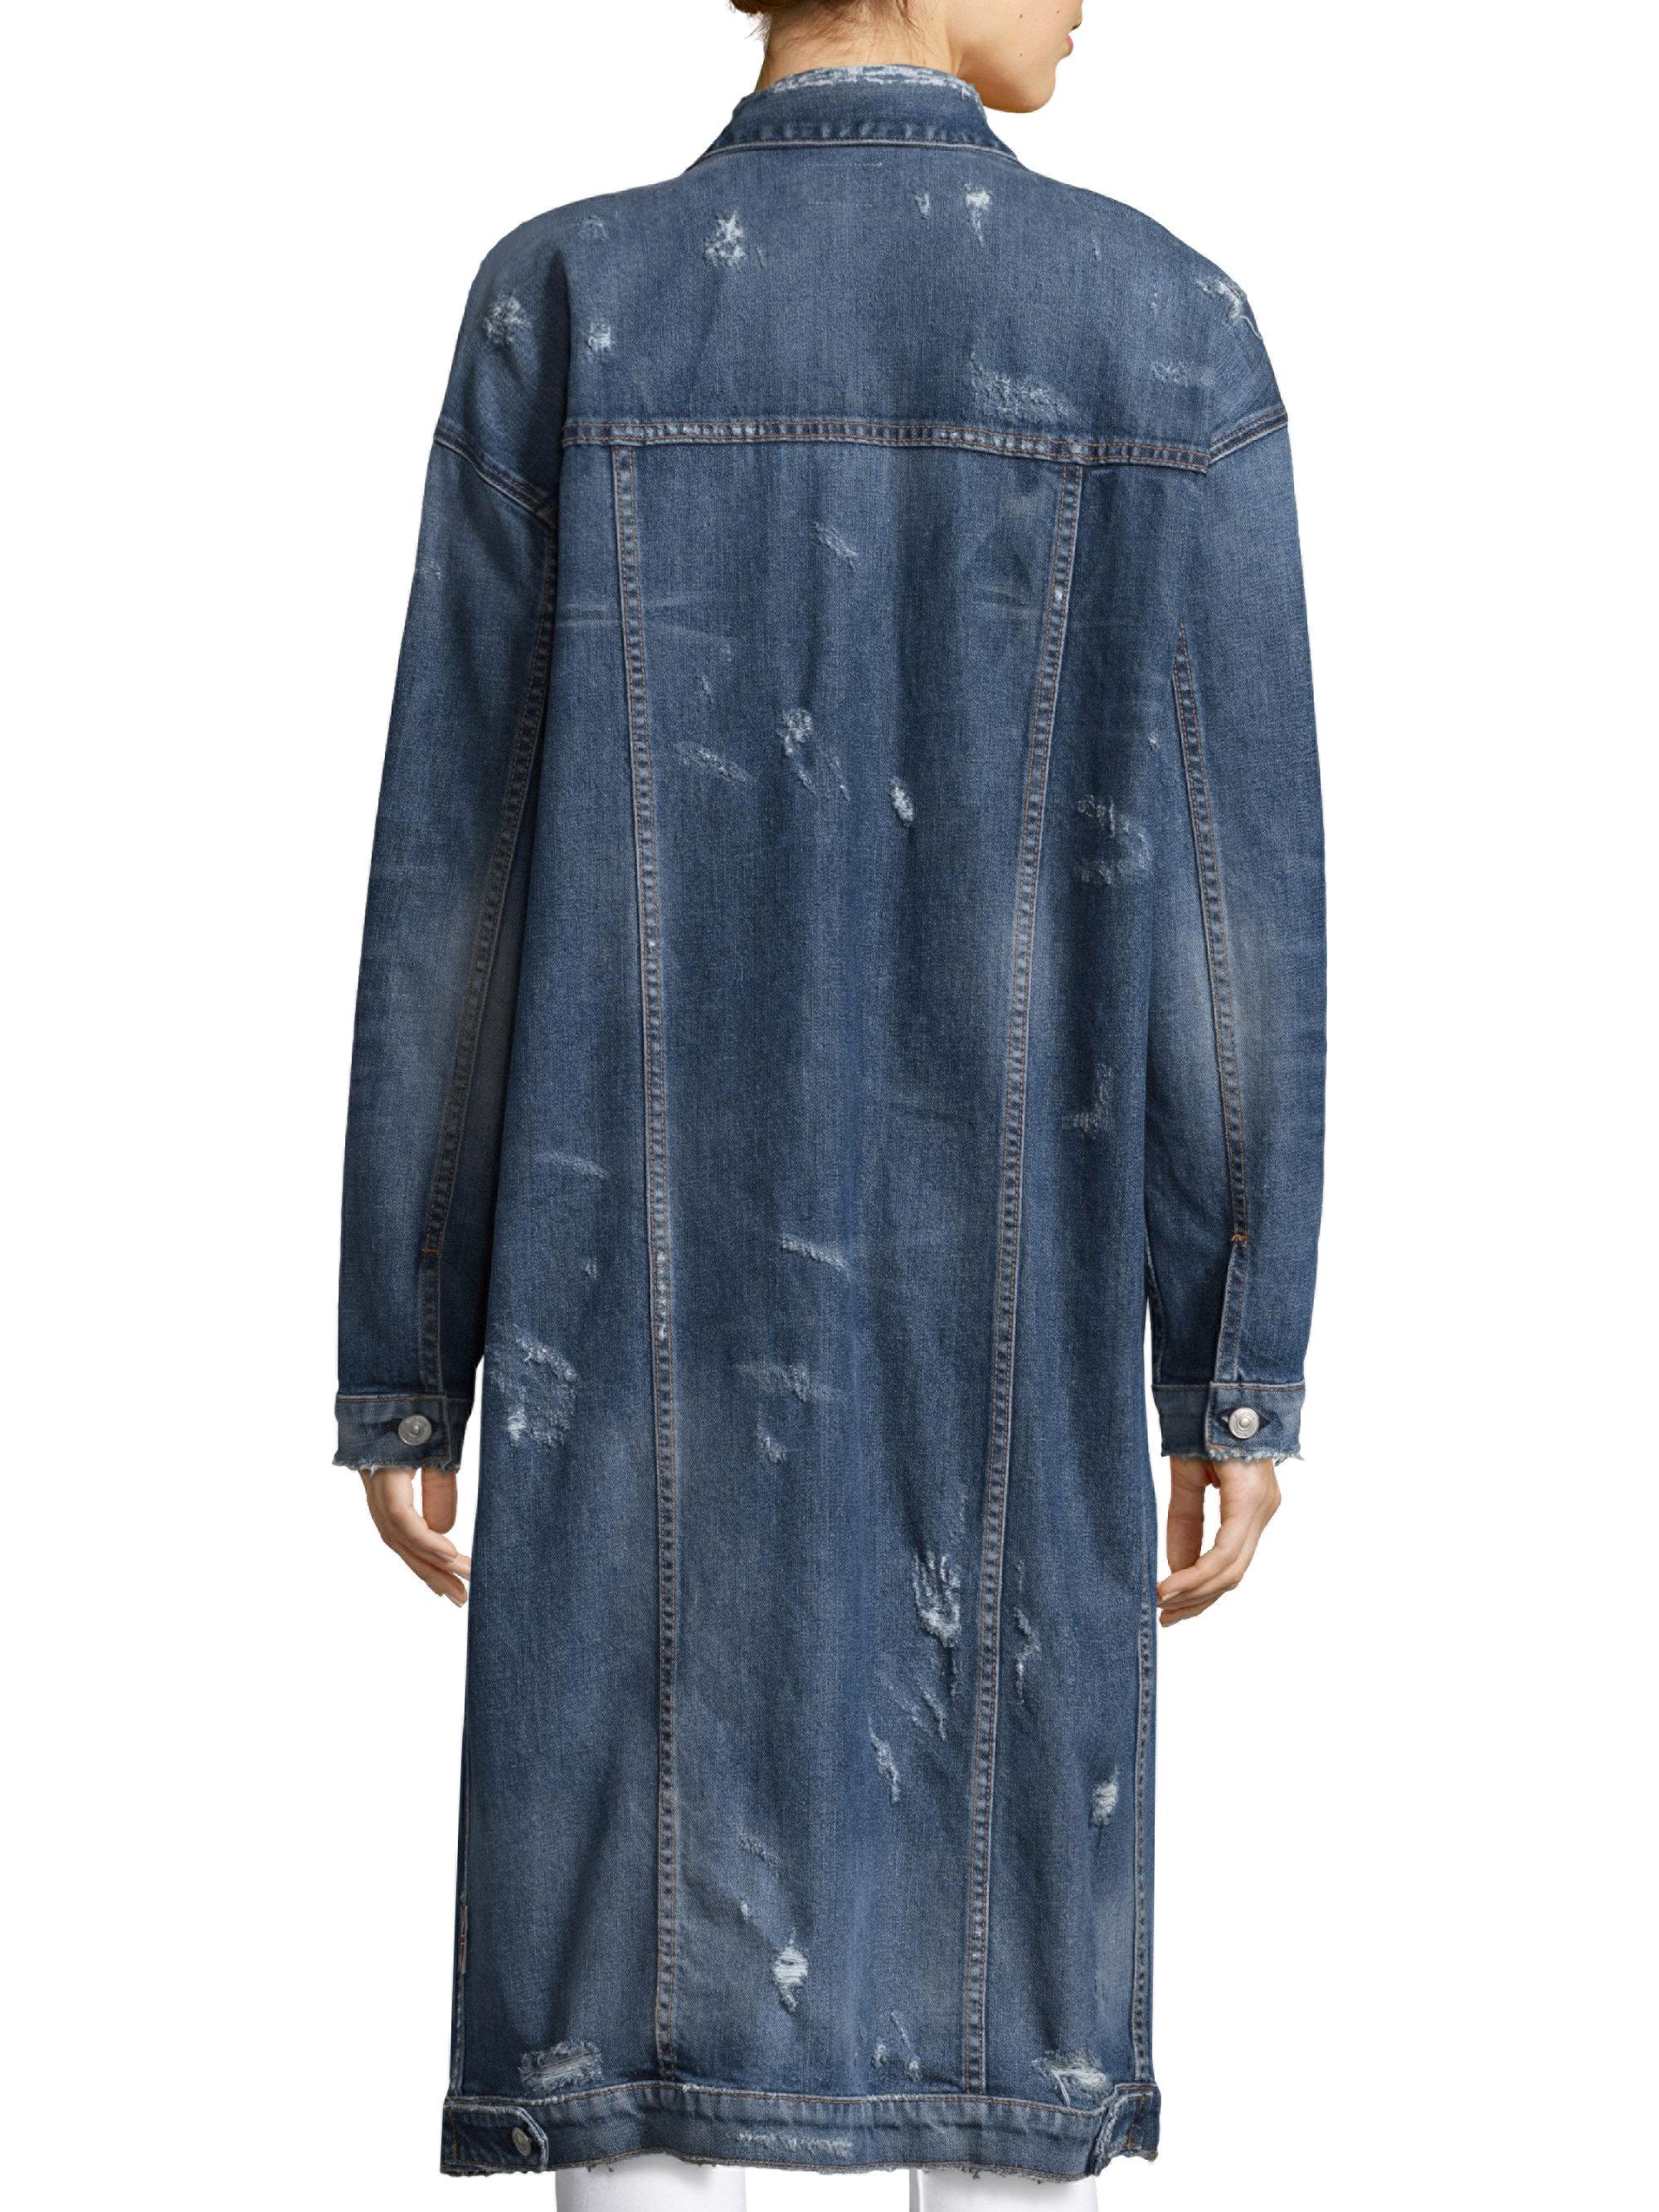 Hudson Jeans Long Denim Duster Jacket in Blue - Lyst